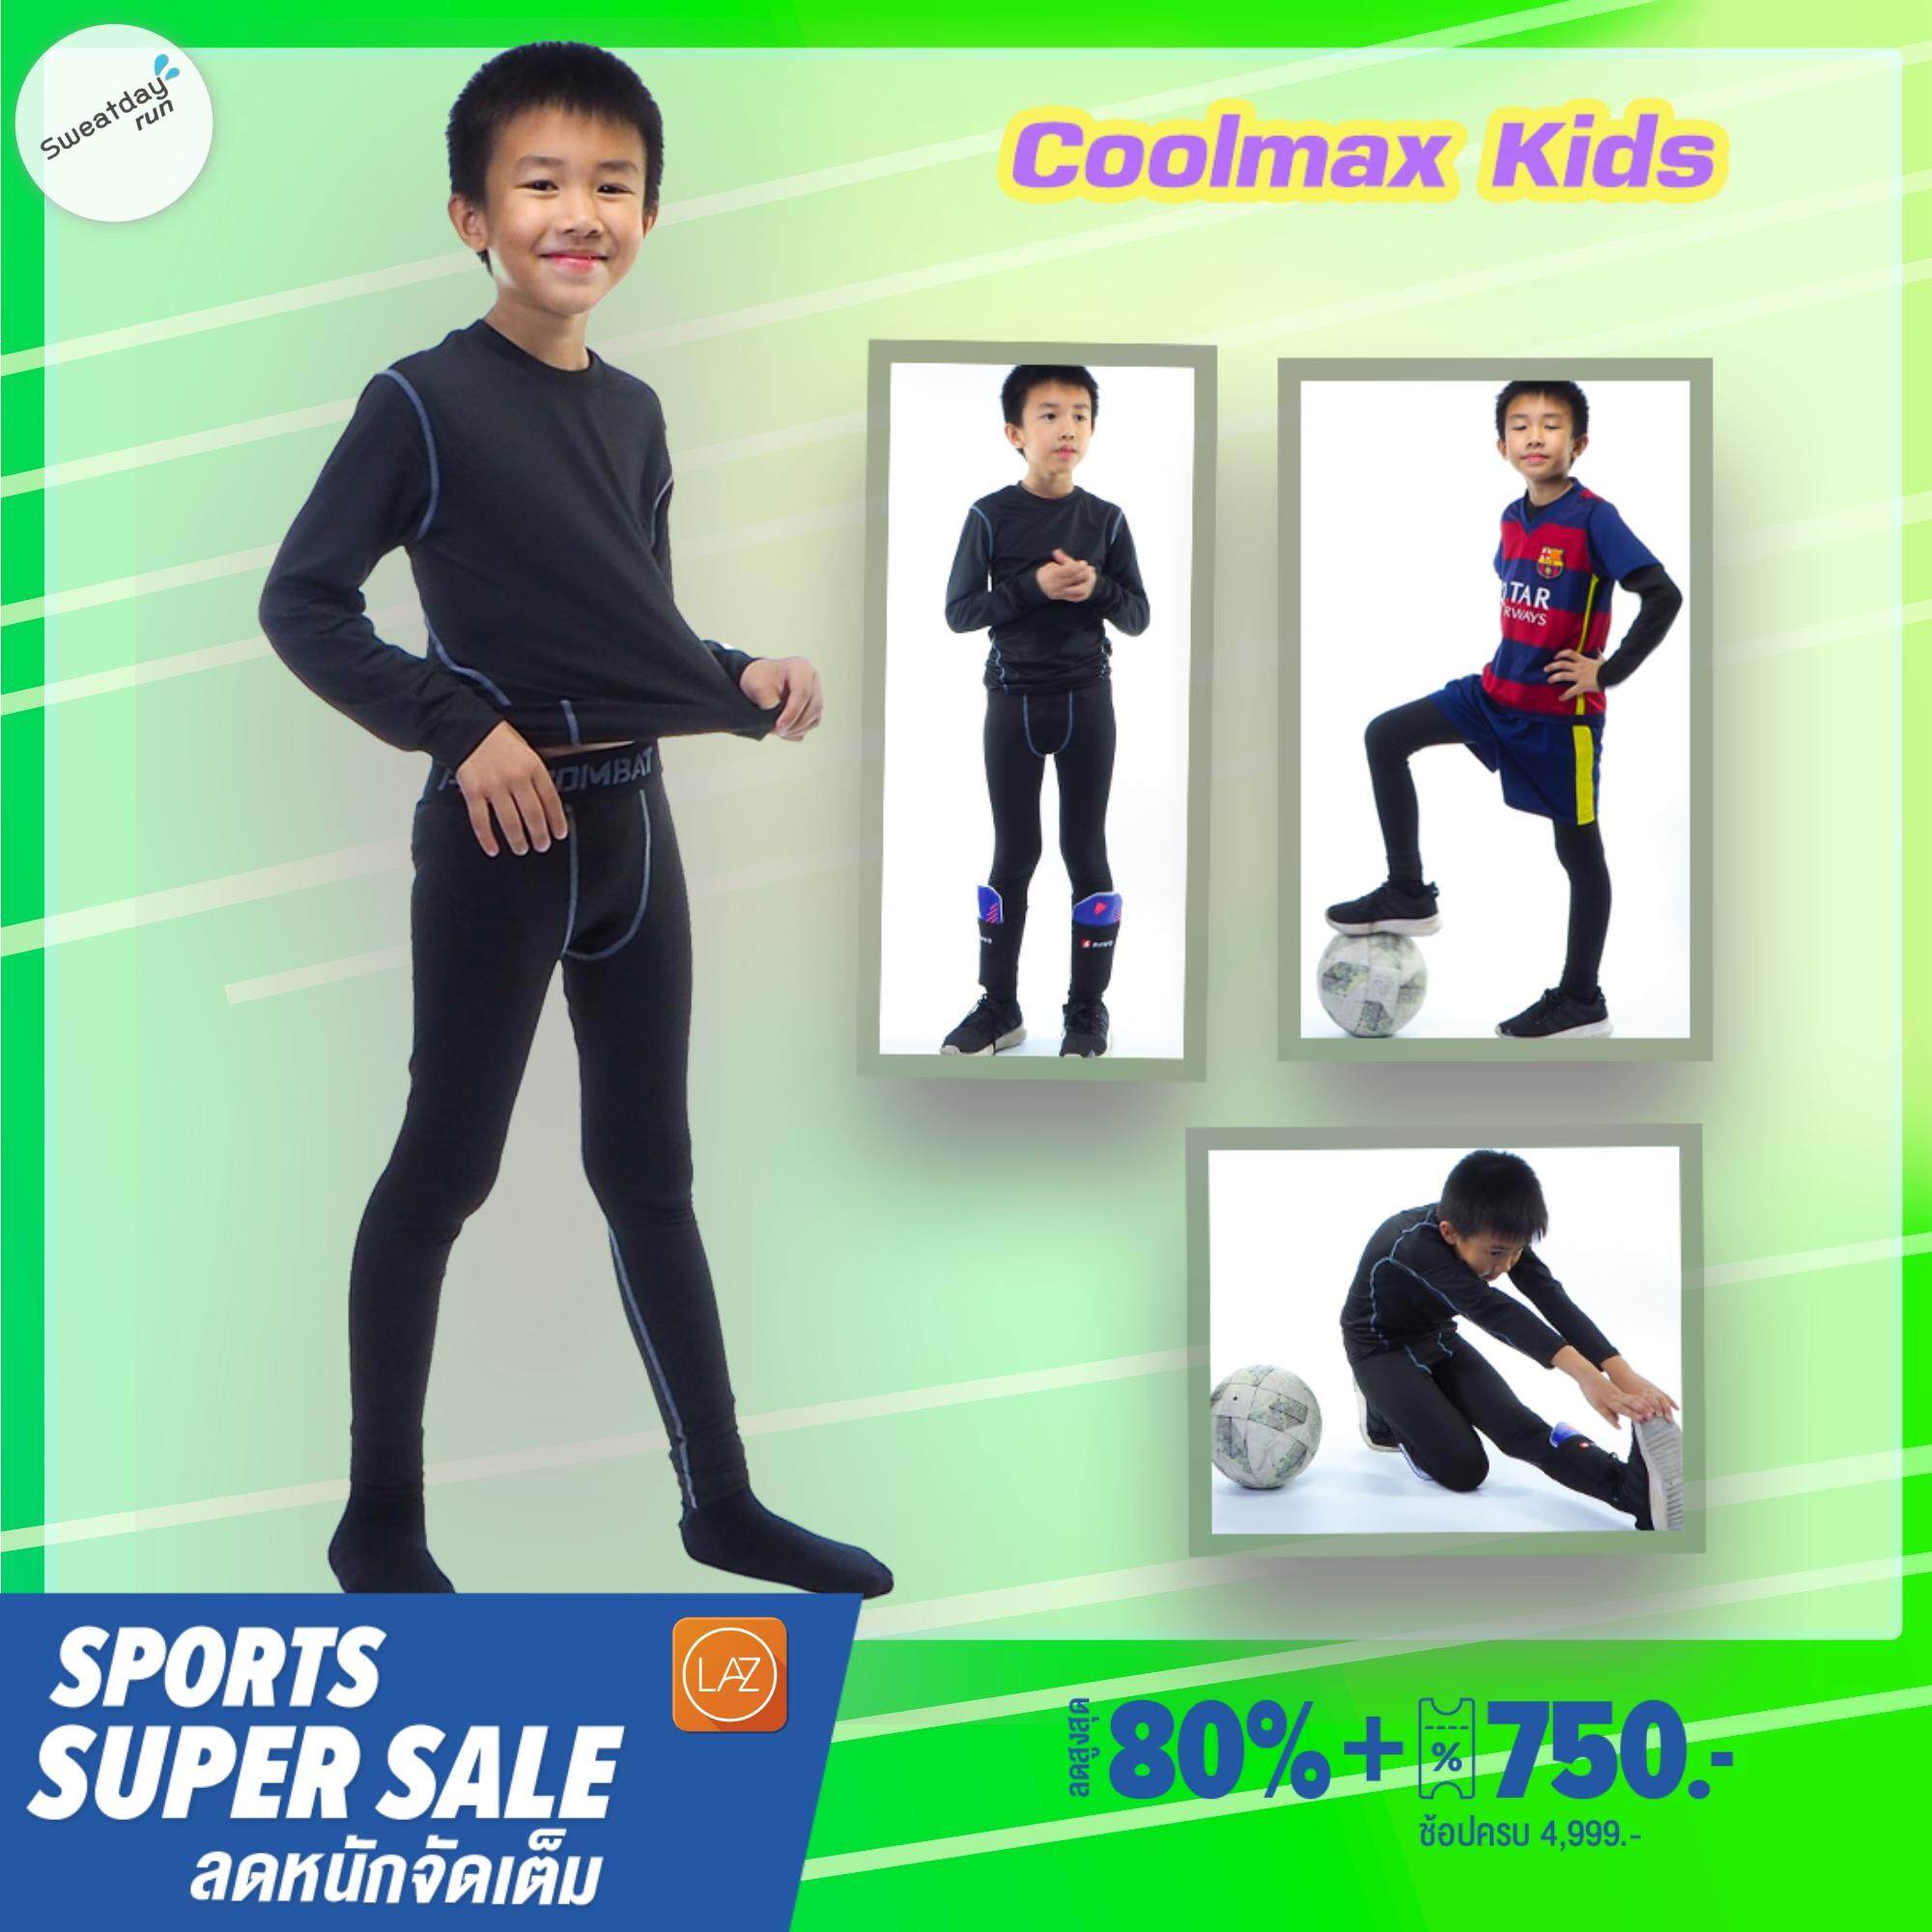 ชุดรัดกล้ามเนื้อคูลแม๊กซ์สำหรับ..เด็ก Coolmax Kids  (เสื้อแขนยาว+ กางเกงขายาว)